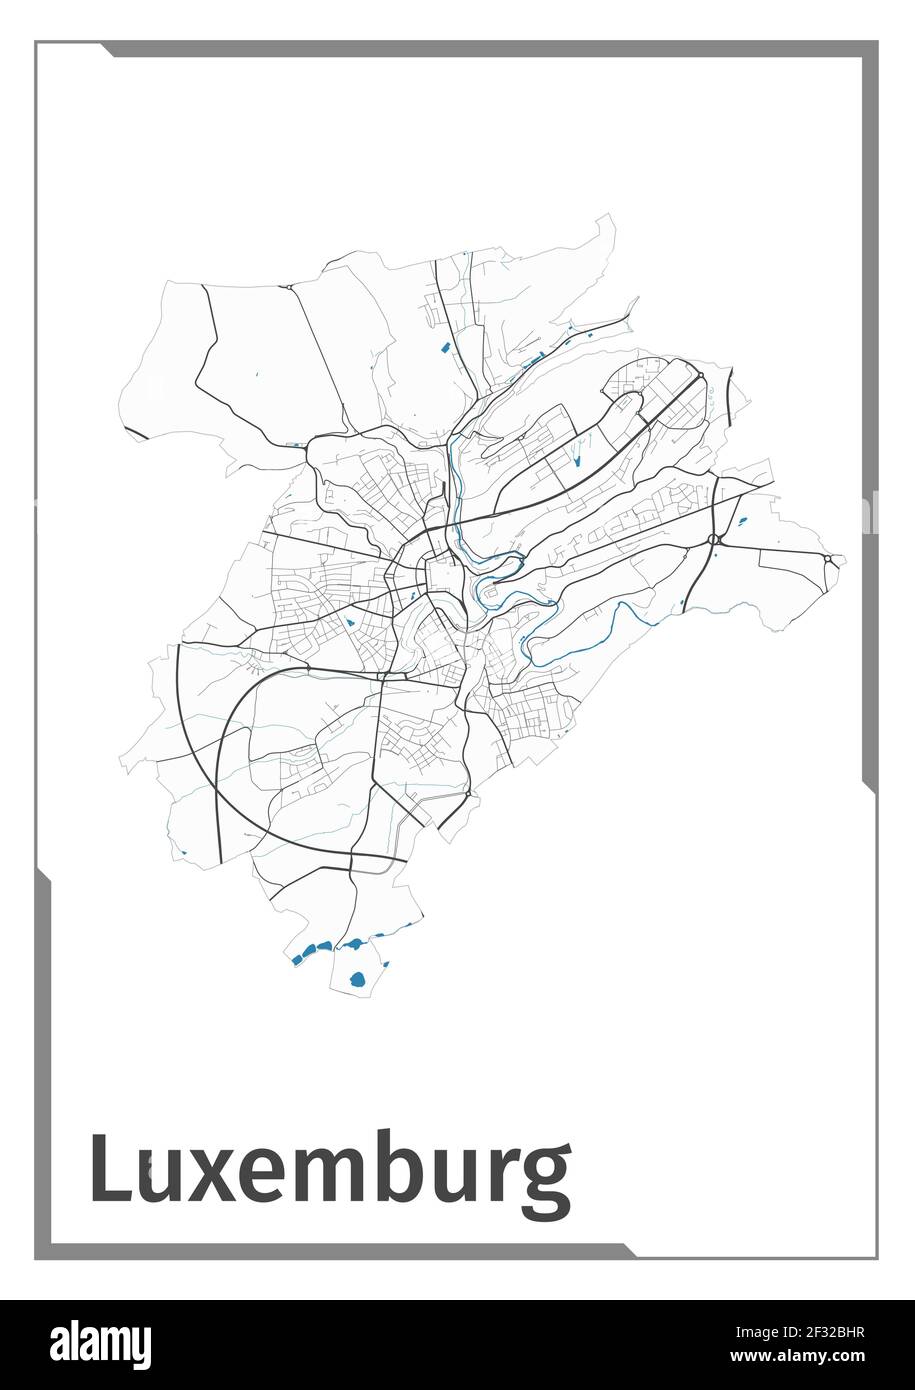 Luxemburg Stadtplan Poster, administrative Fläche Grundriss Ansicht. Schwarz, weiß und blau detaillierte Design-Karte der Stadt Luxemburg mit Flüssen und Straßen. Outli Stock Vektor